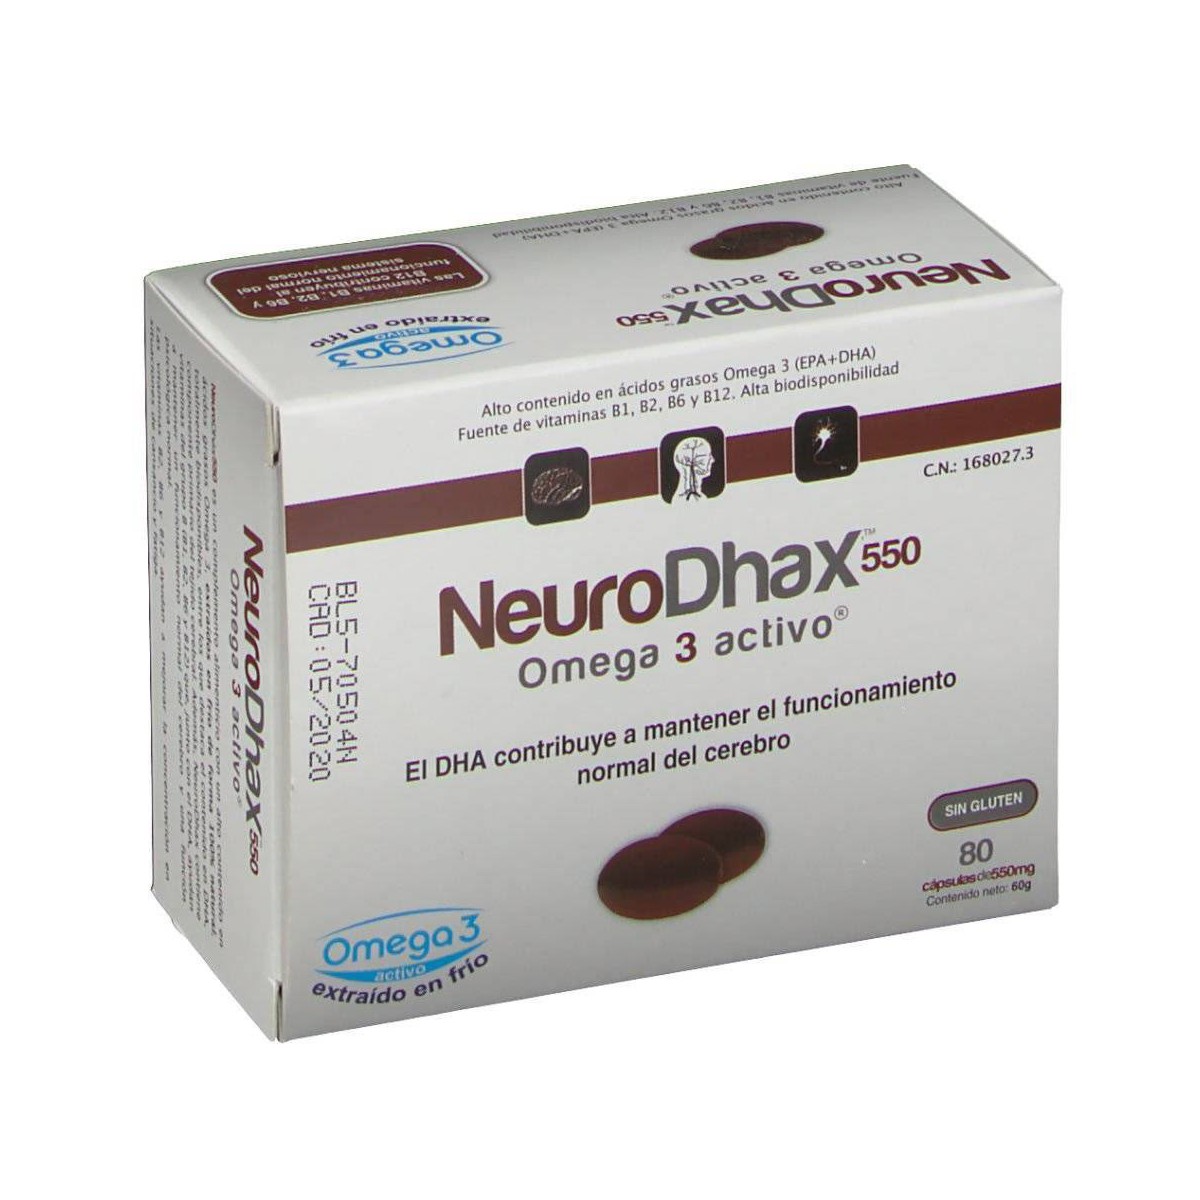 Neurodhax Omega 3 550 mg 80 cápsulas